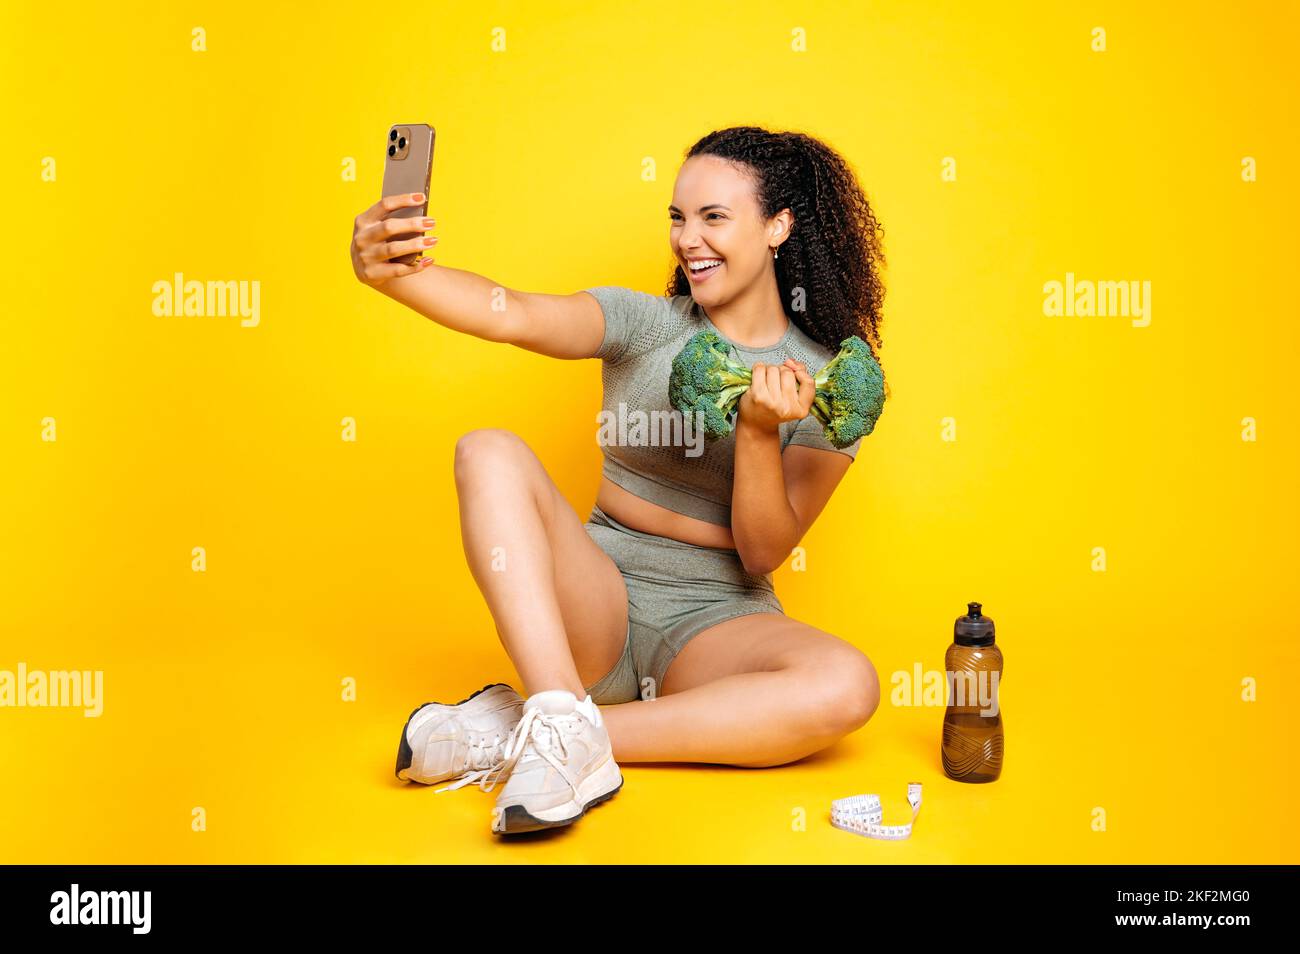 Fröhliche lustige gemischte Rasse lockige Frau im Sport-Outfit, nimmt Selfie auf dem Smartphone mit Brokkoli Hantel, während sie auf isolierten orangefarbenen Hintergrund sitzen, lächeln, Spaß haben, emotionalen Gesichtsausdruck Stockfoto